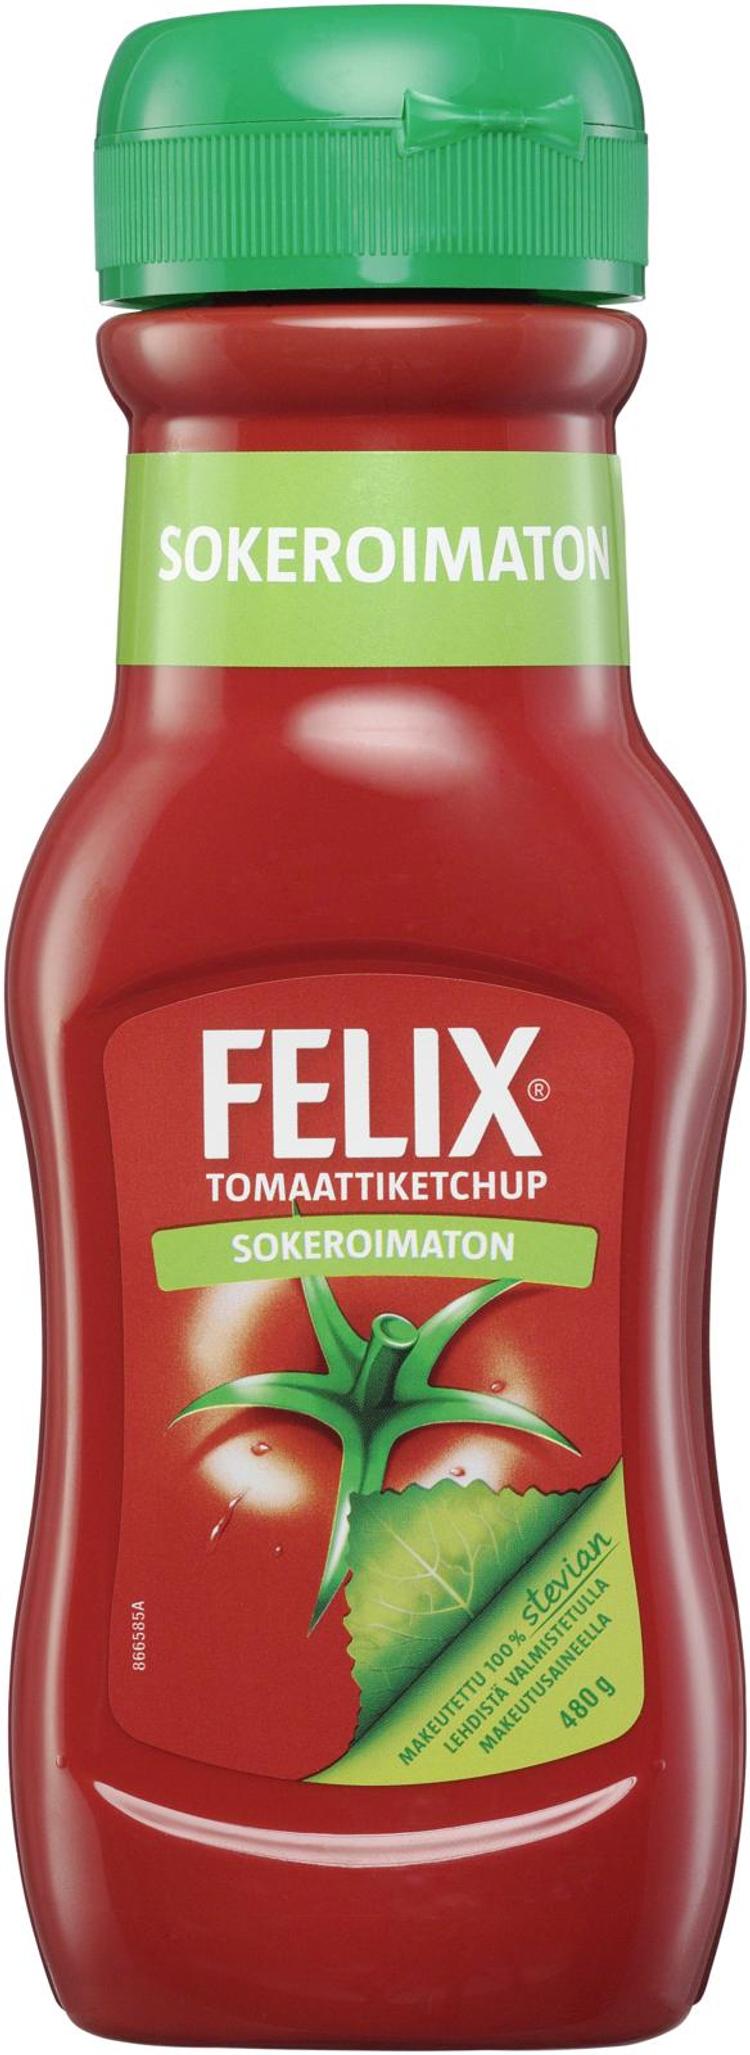 Felix sokeroimaton ketchup 480g